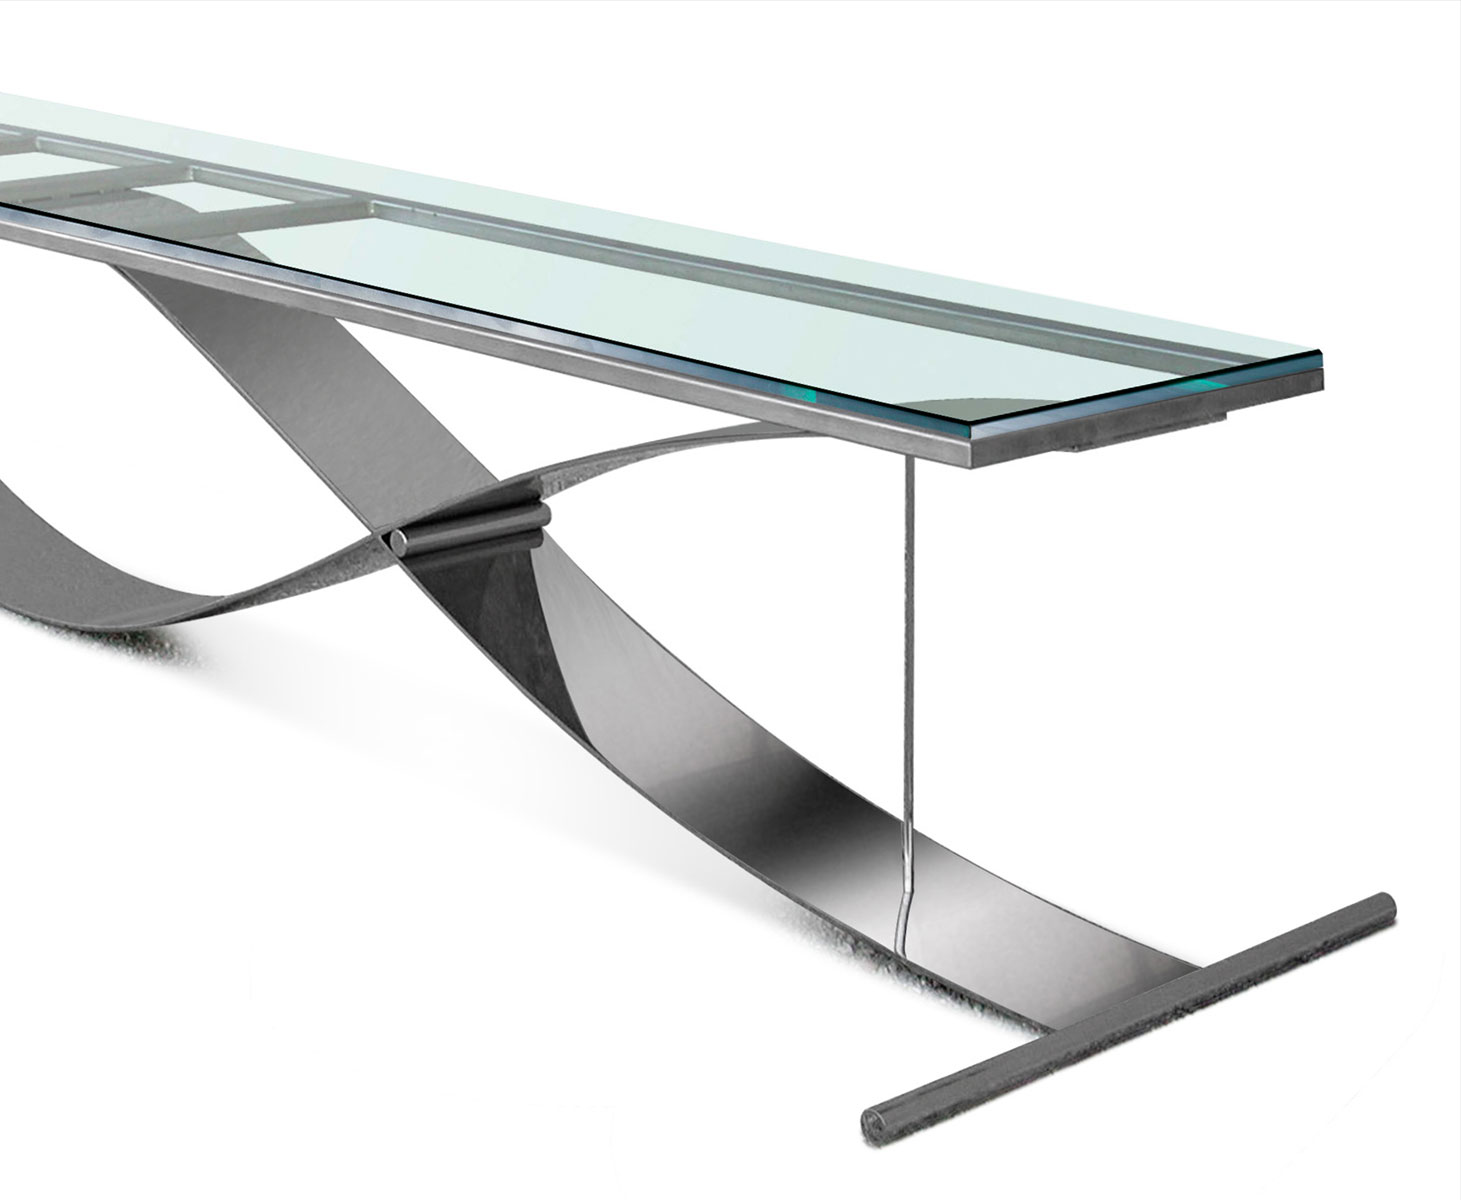 Tavolo con supporto in acciaio inox e superficie in vetro.